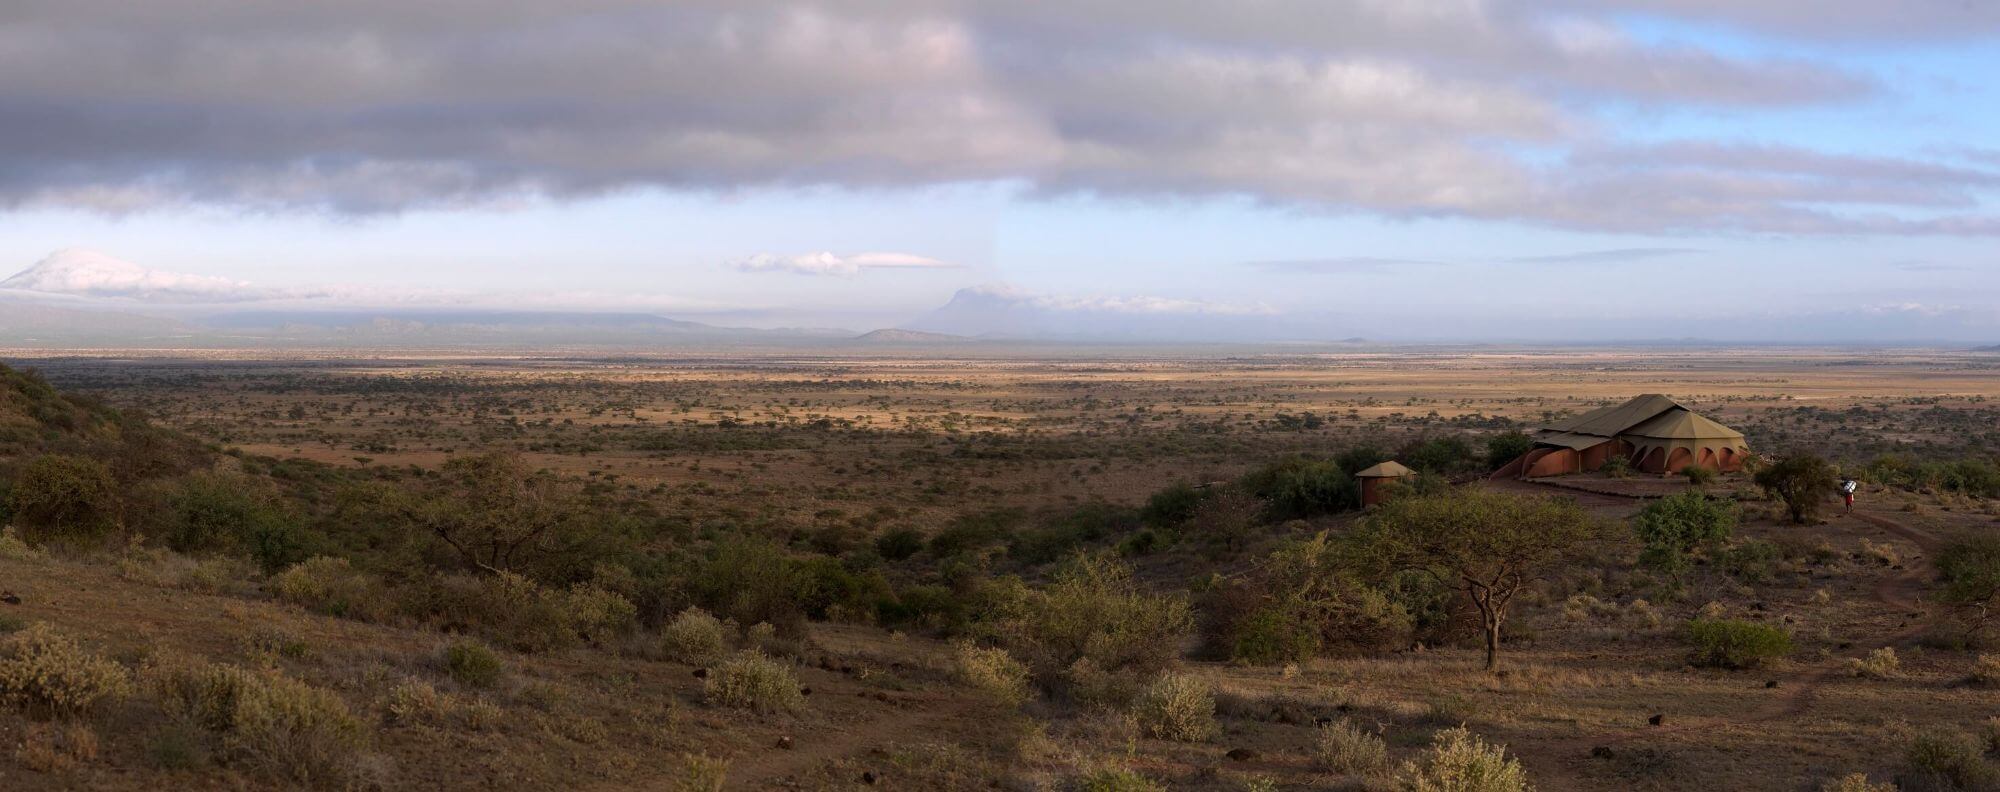 West Kilimanjaro